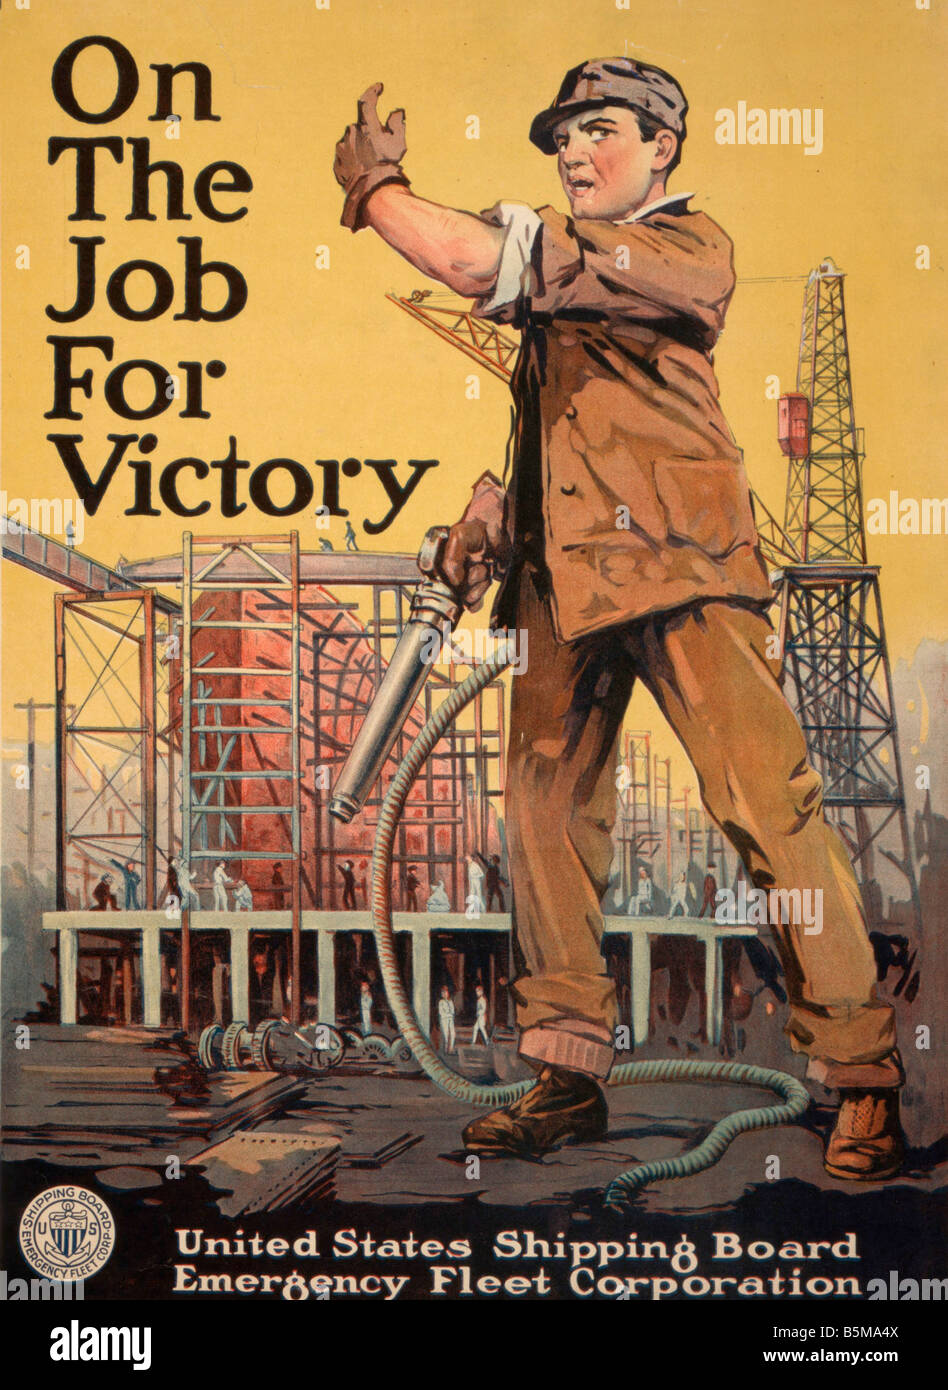 2 G55 P1 1917 55 WW I USA auf dem Arbeitsmarkt für Sieg Poster Geschichte Welt Krieg ich Propaganda auf dem Arbeitsmarkt für Sieg Propaganda durch die Stockfoto